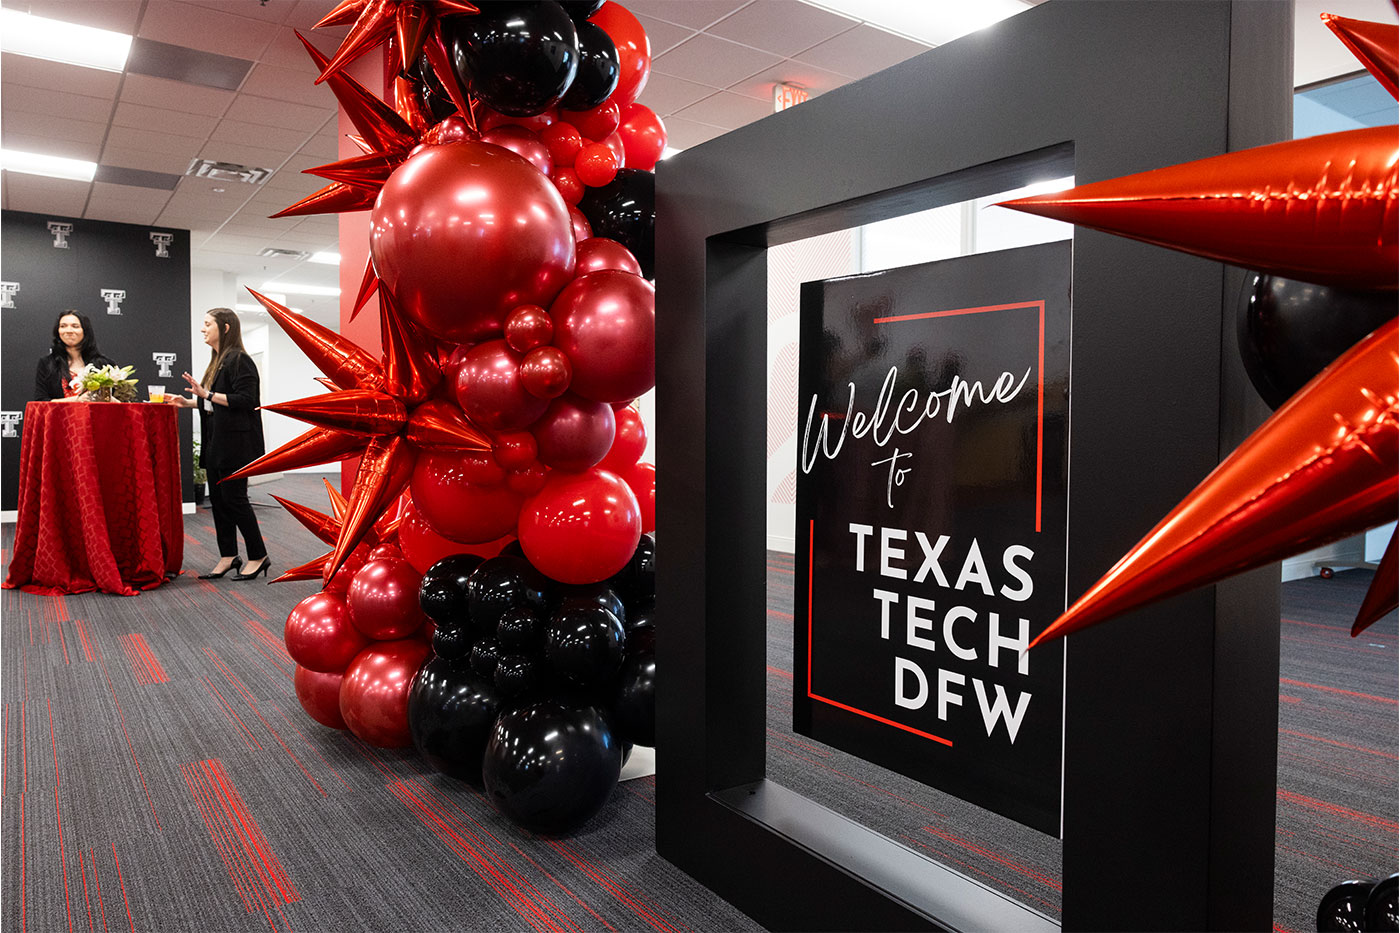 Texas Tech DFW balloons